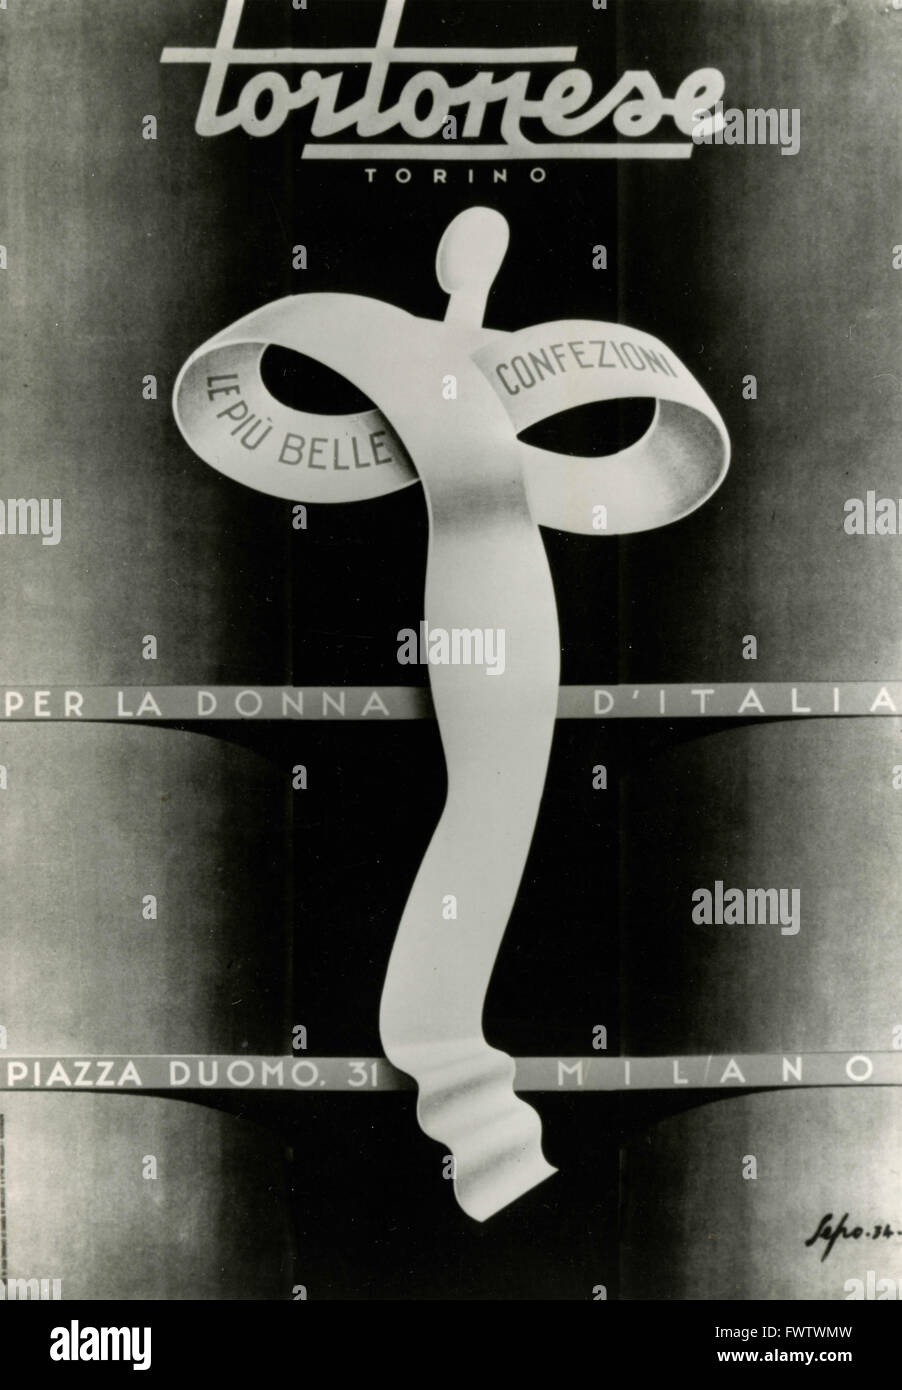 Advertising Tortona, Sepo, 1934, Italy Stock Photo